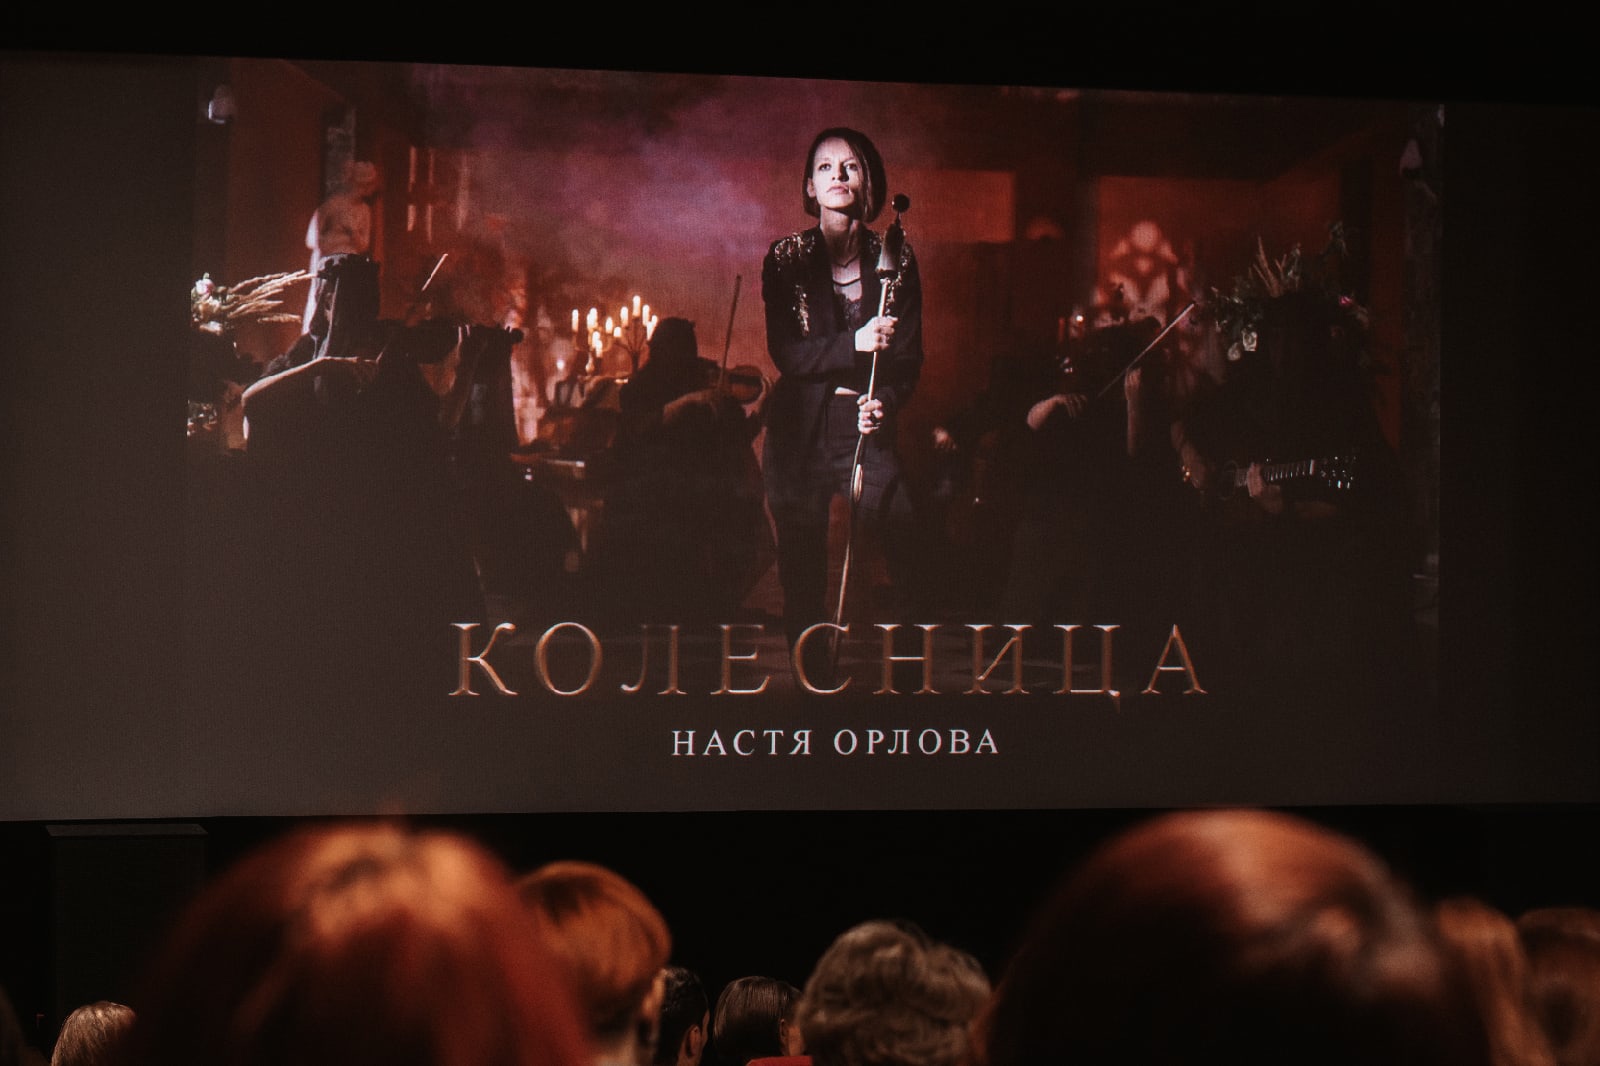 Musiikkivideo sai ensi-iltansa suurella valkokankaalla Premjer-elokuvateatterissa. 12+. Kuva: Anastasia Orlovan VKontakte-tili